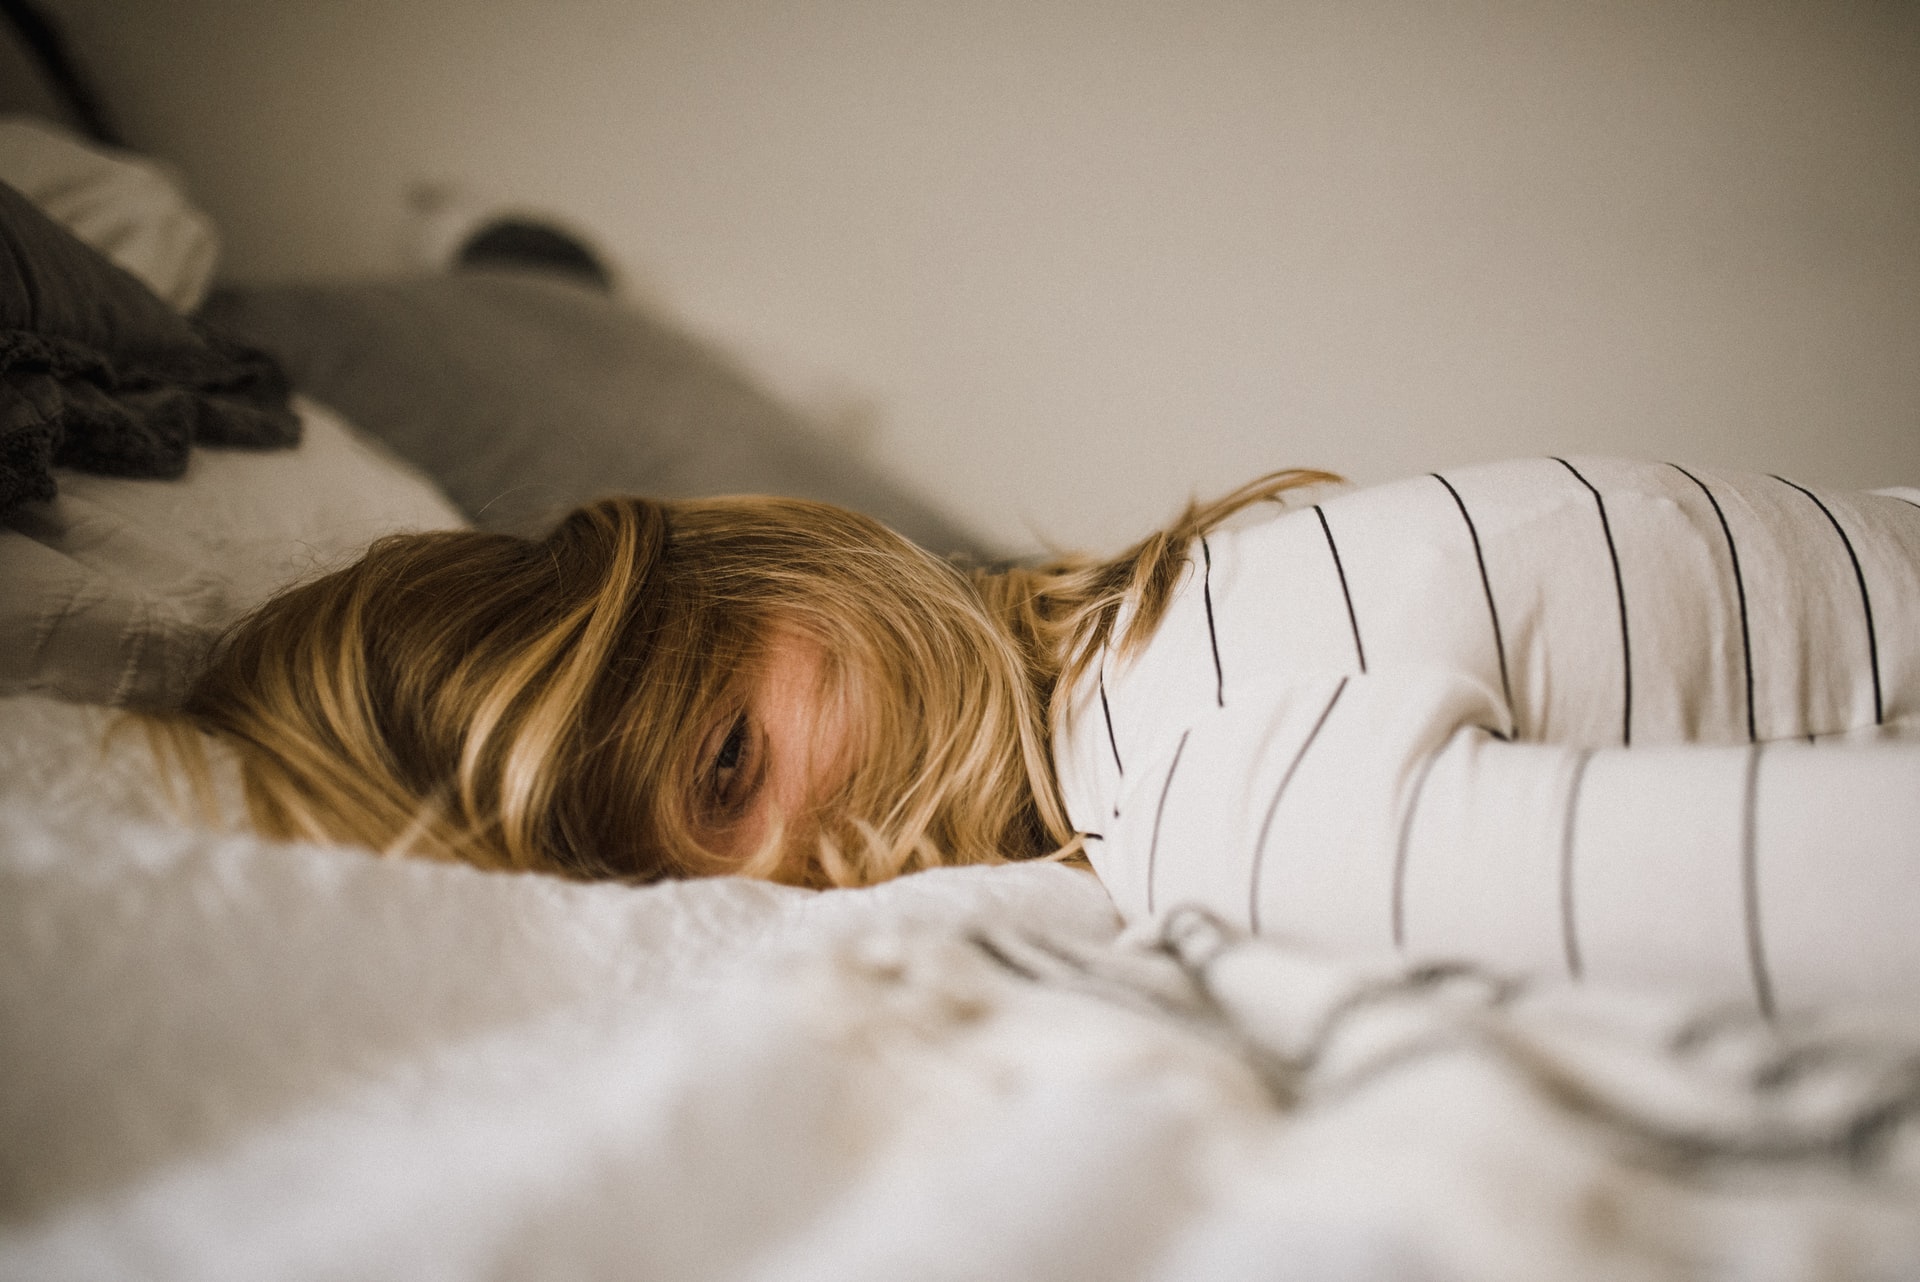 Susah Tidur? Coba 9 Cara Ampuh Tidur Cepat Berikut Ini untuk Penderita Insomnia